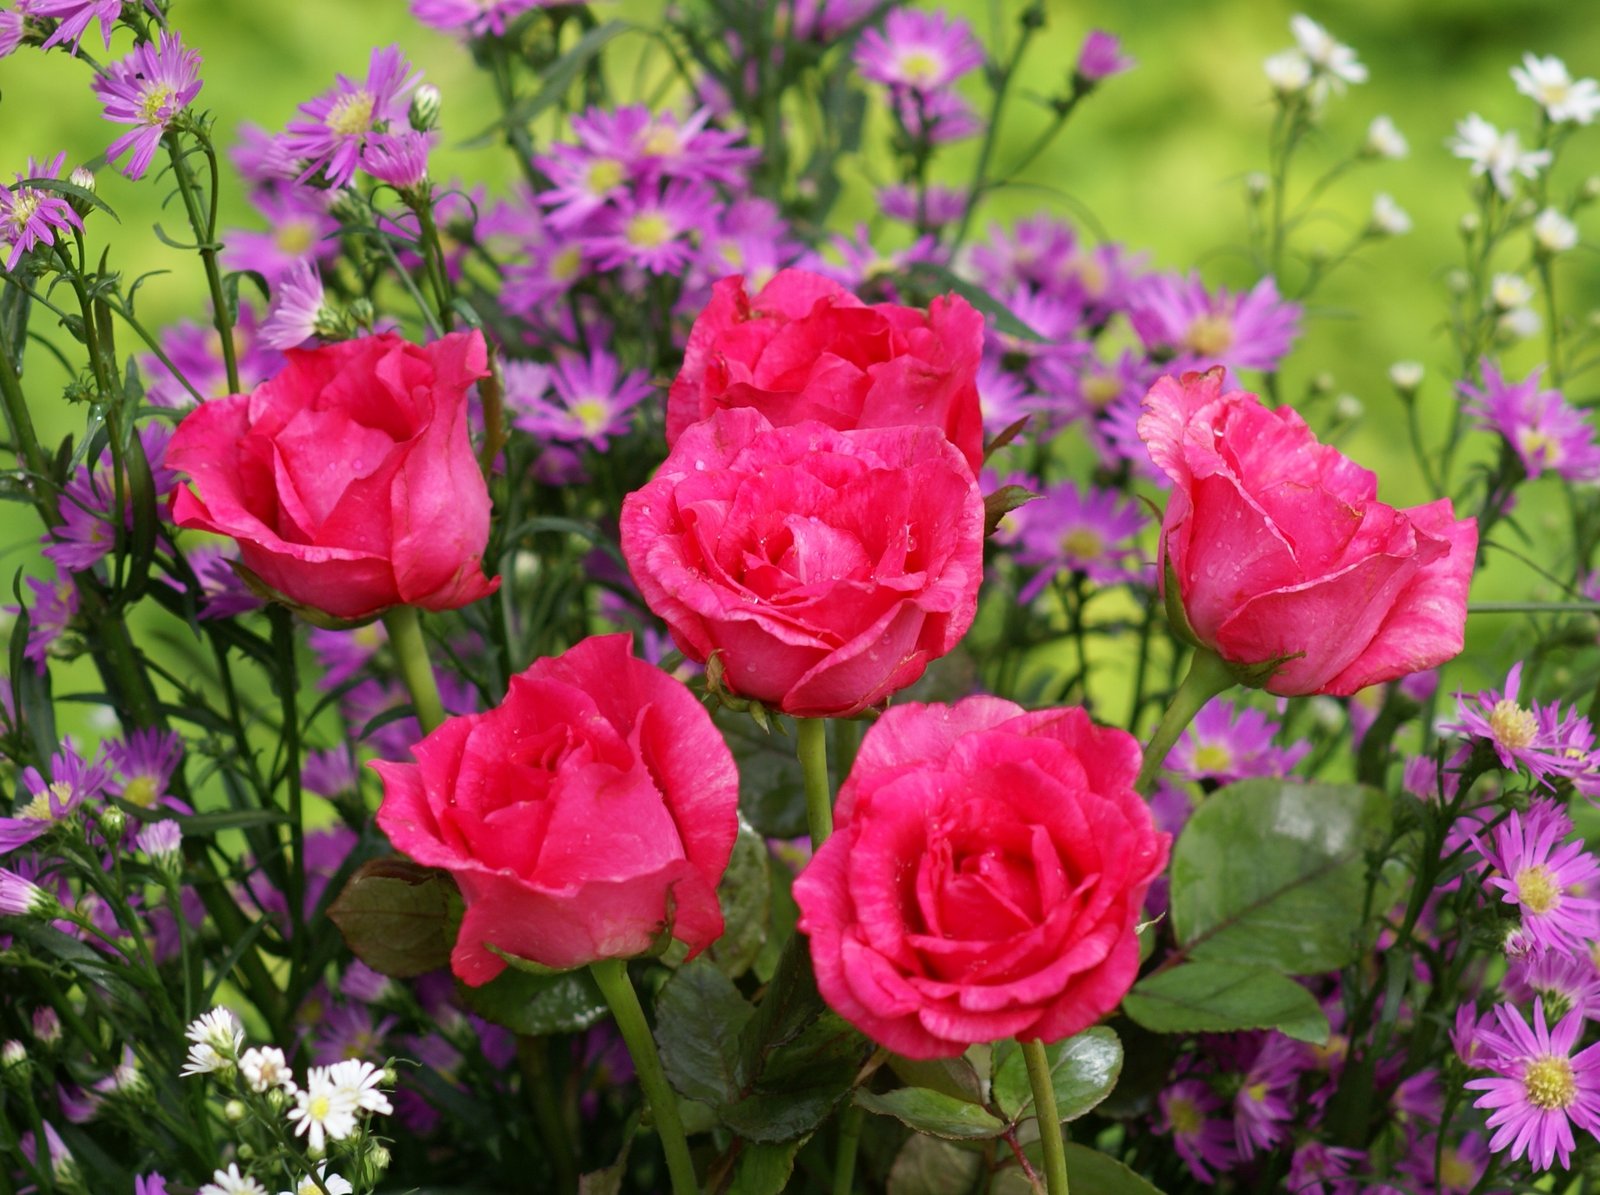 schönsten rosentapeten,blume,blühende pflanze,gartenrosen,blütenblatt,pflanze